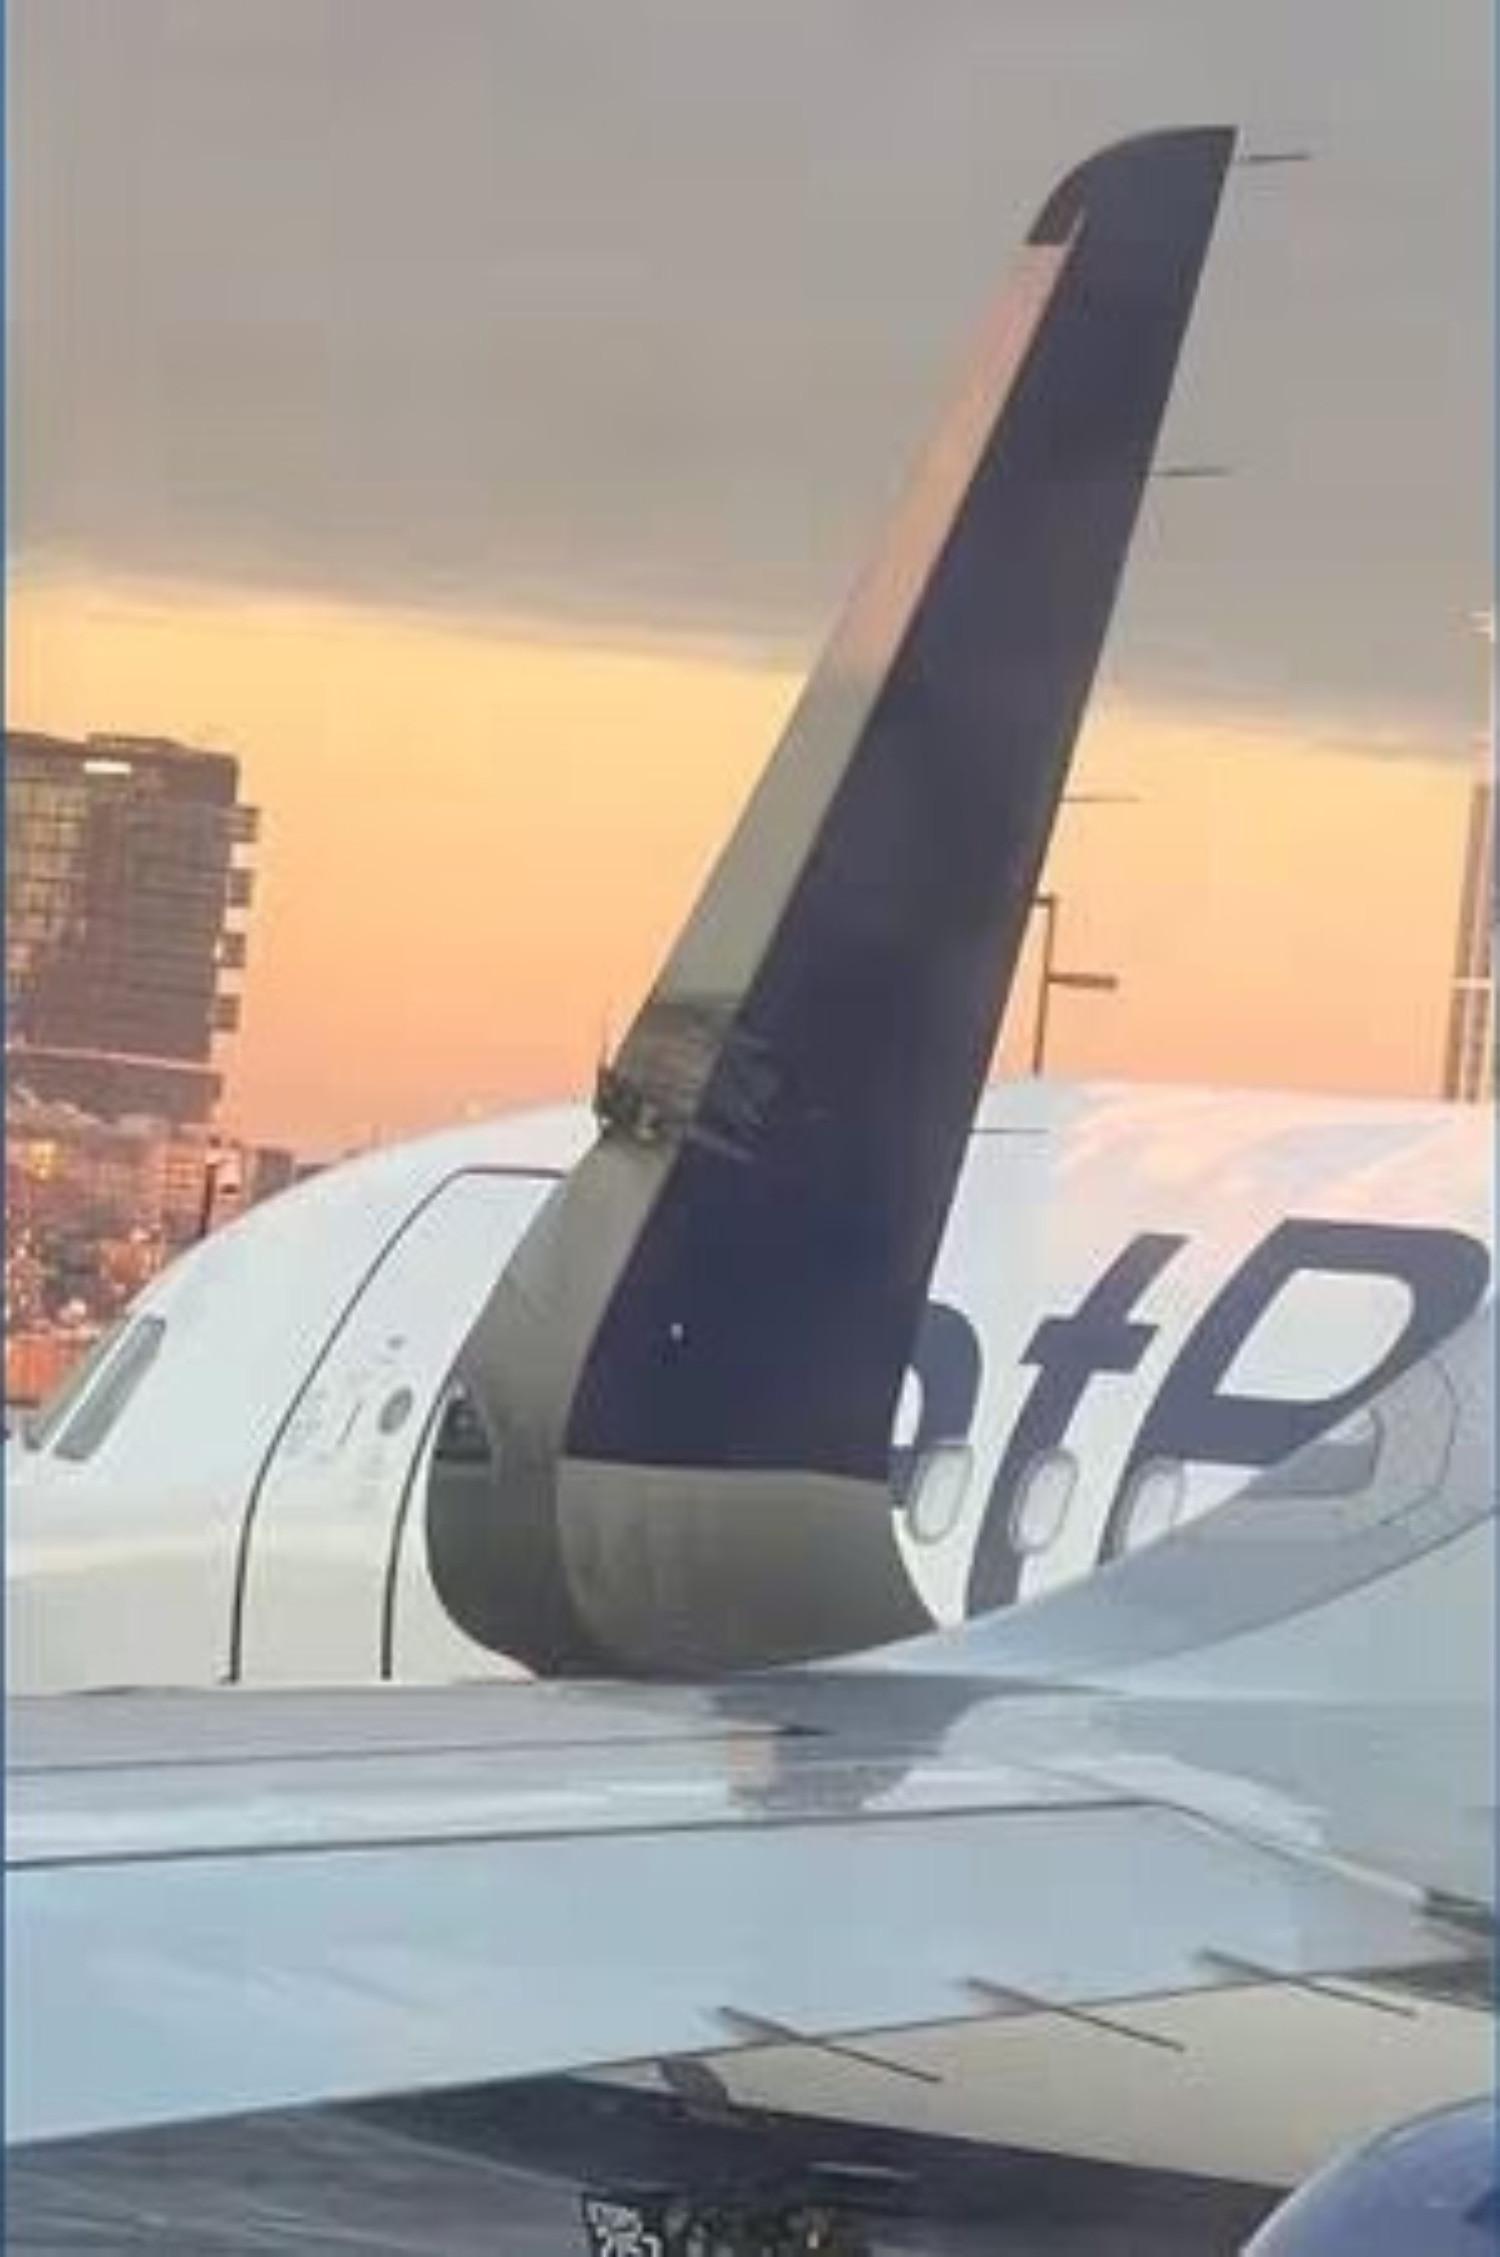 2 máy bay Airbus A321 va chạm trên đường băng sứt đuôi mẻ cánh-3